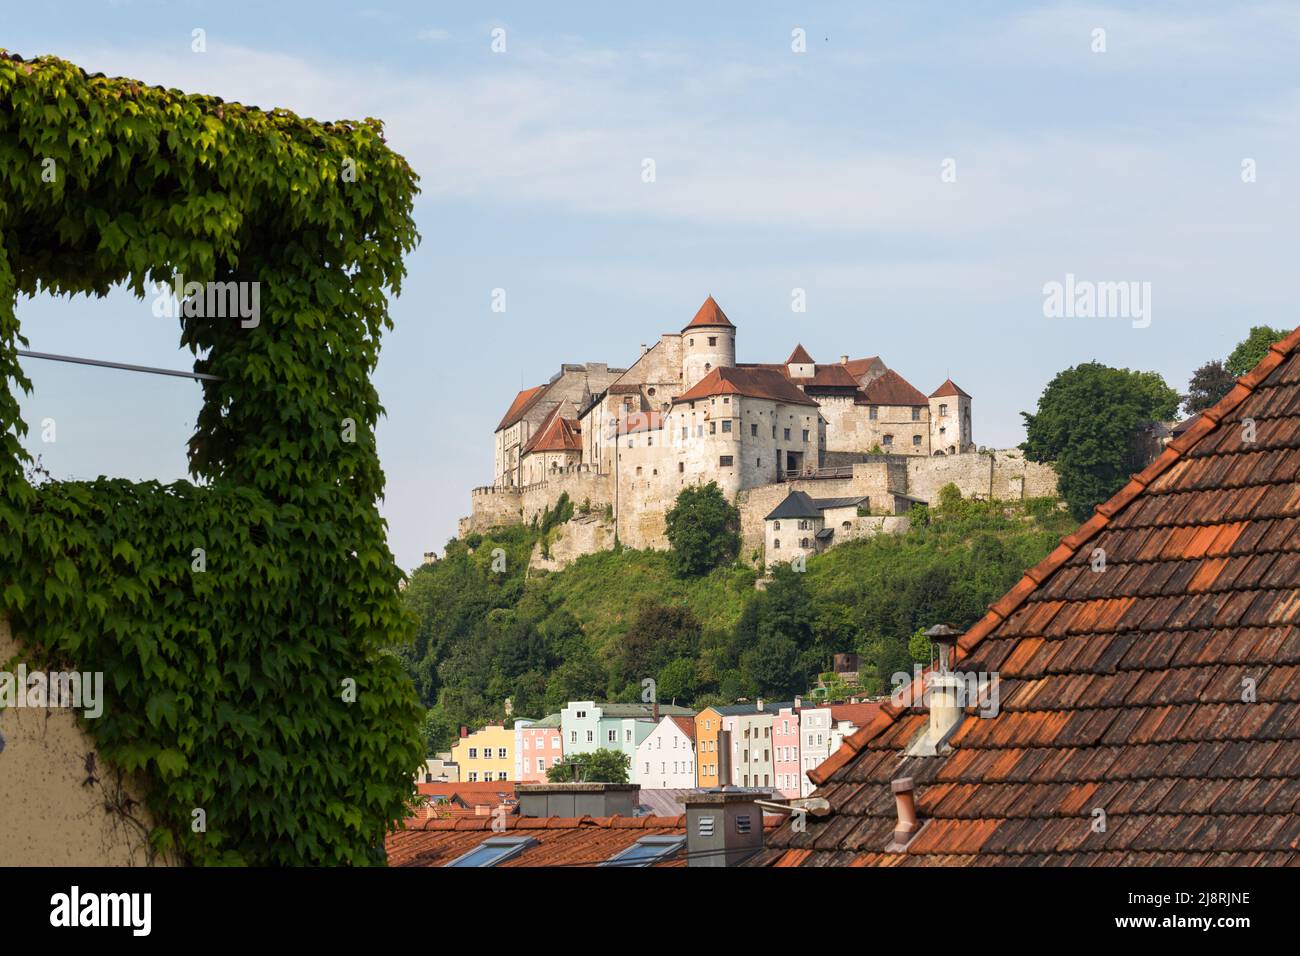 Burghausen, Germania - 24 luglio 2021: Castello principale di Burghausen - il castello più lungo del mondo. Foto Stock